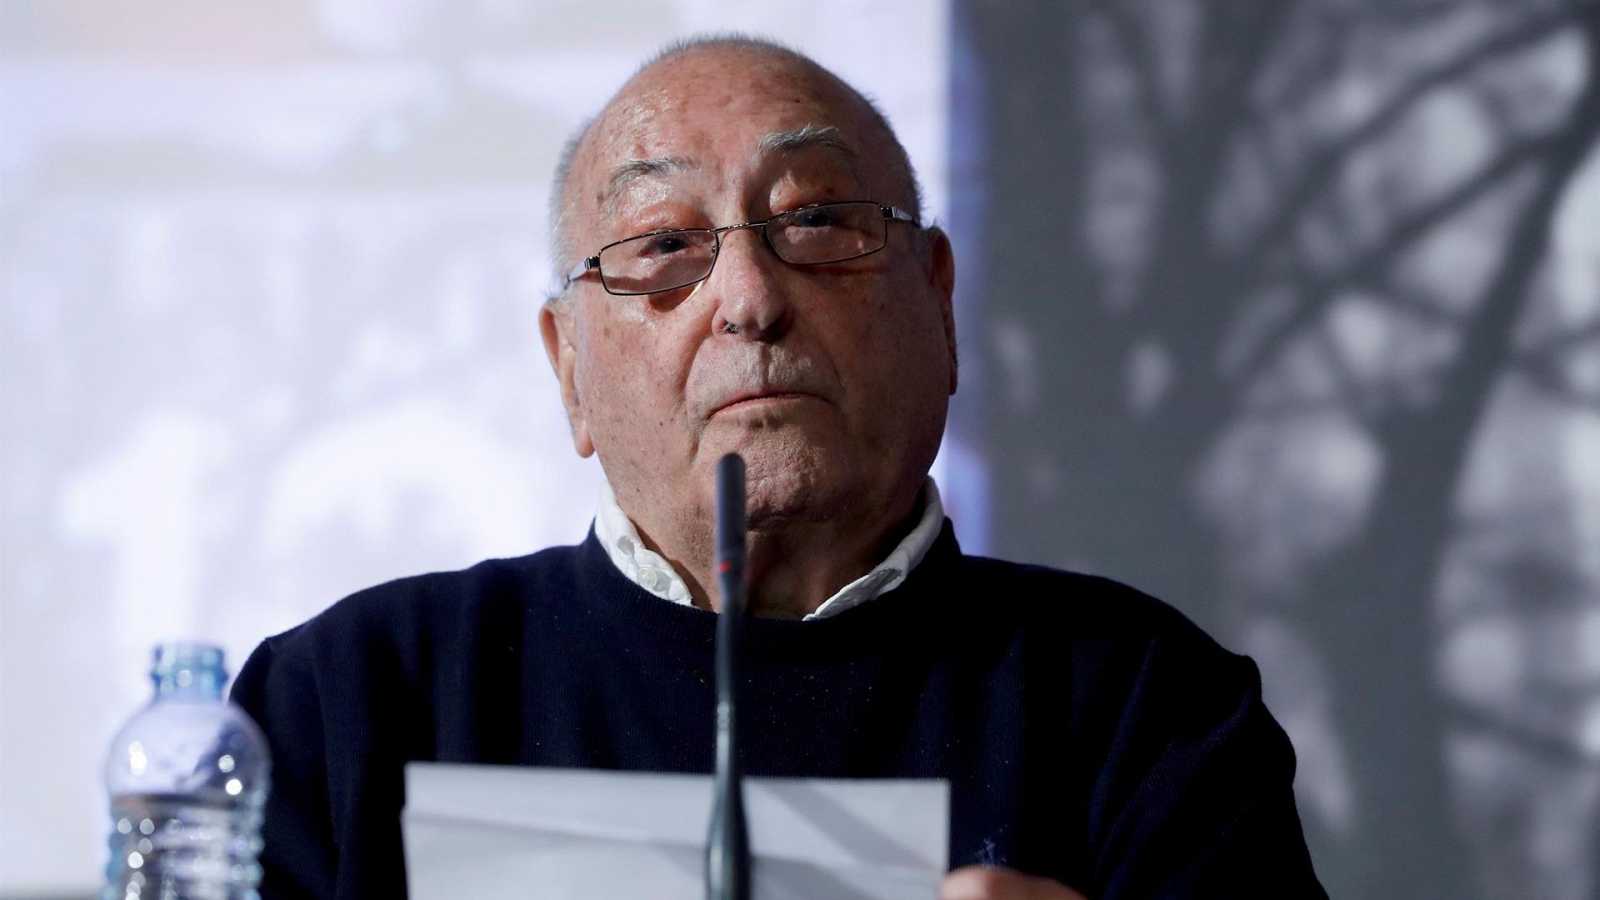 El histórico líder sindical Nicolás Redondo Urbieta muere a los 95 años